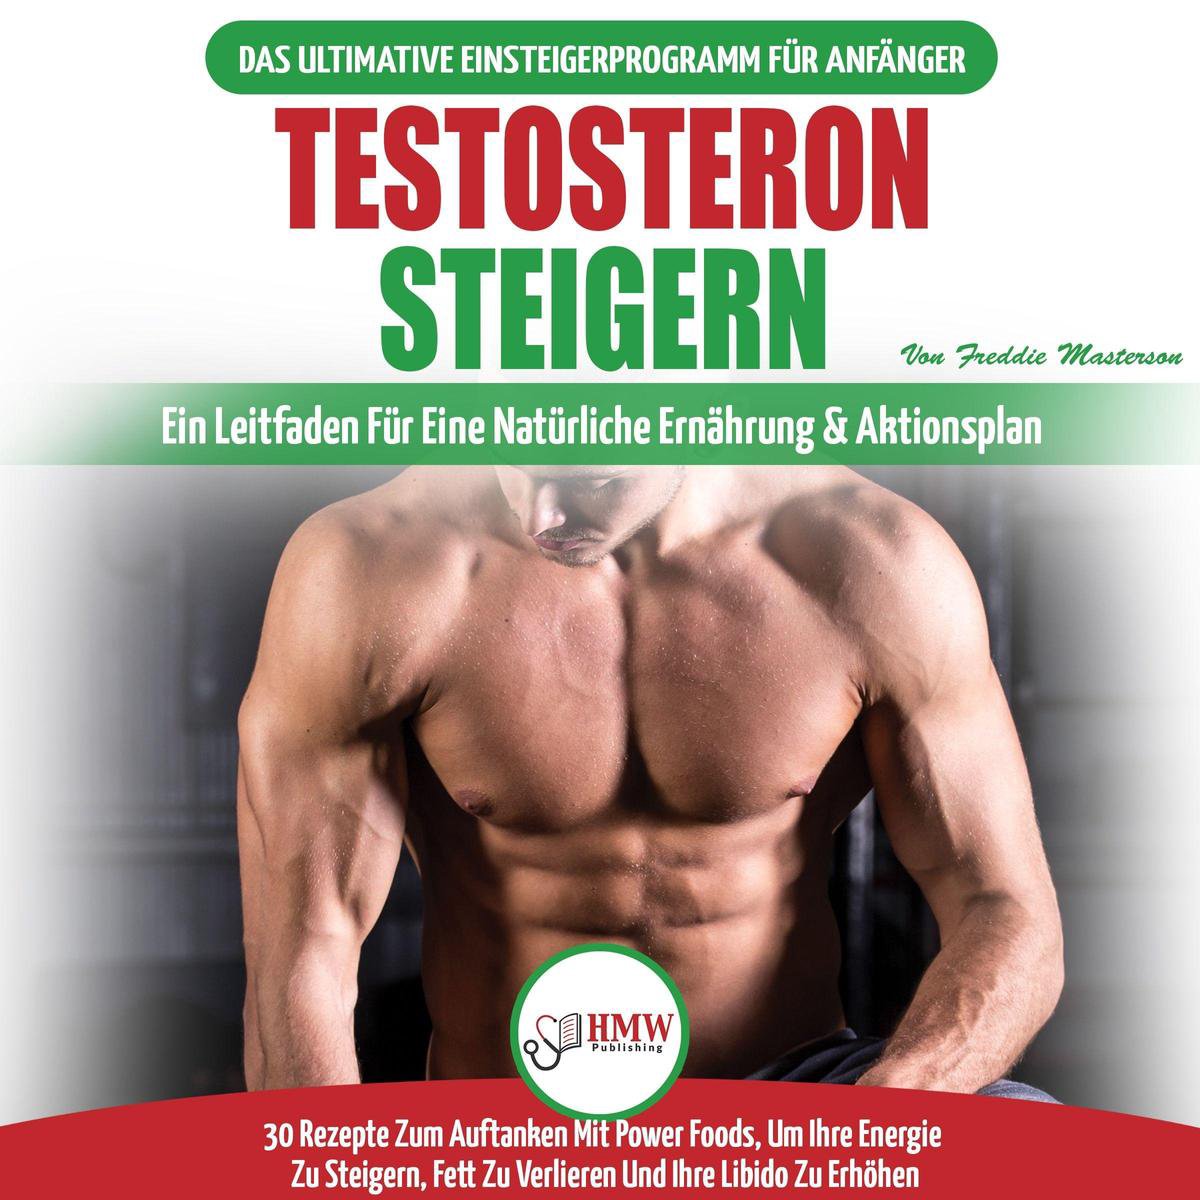 5 testosteron-propionat -Probleme und wie man sie löst